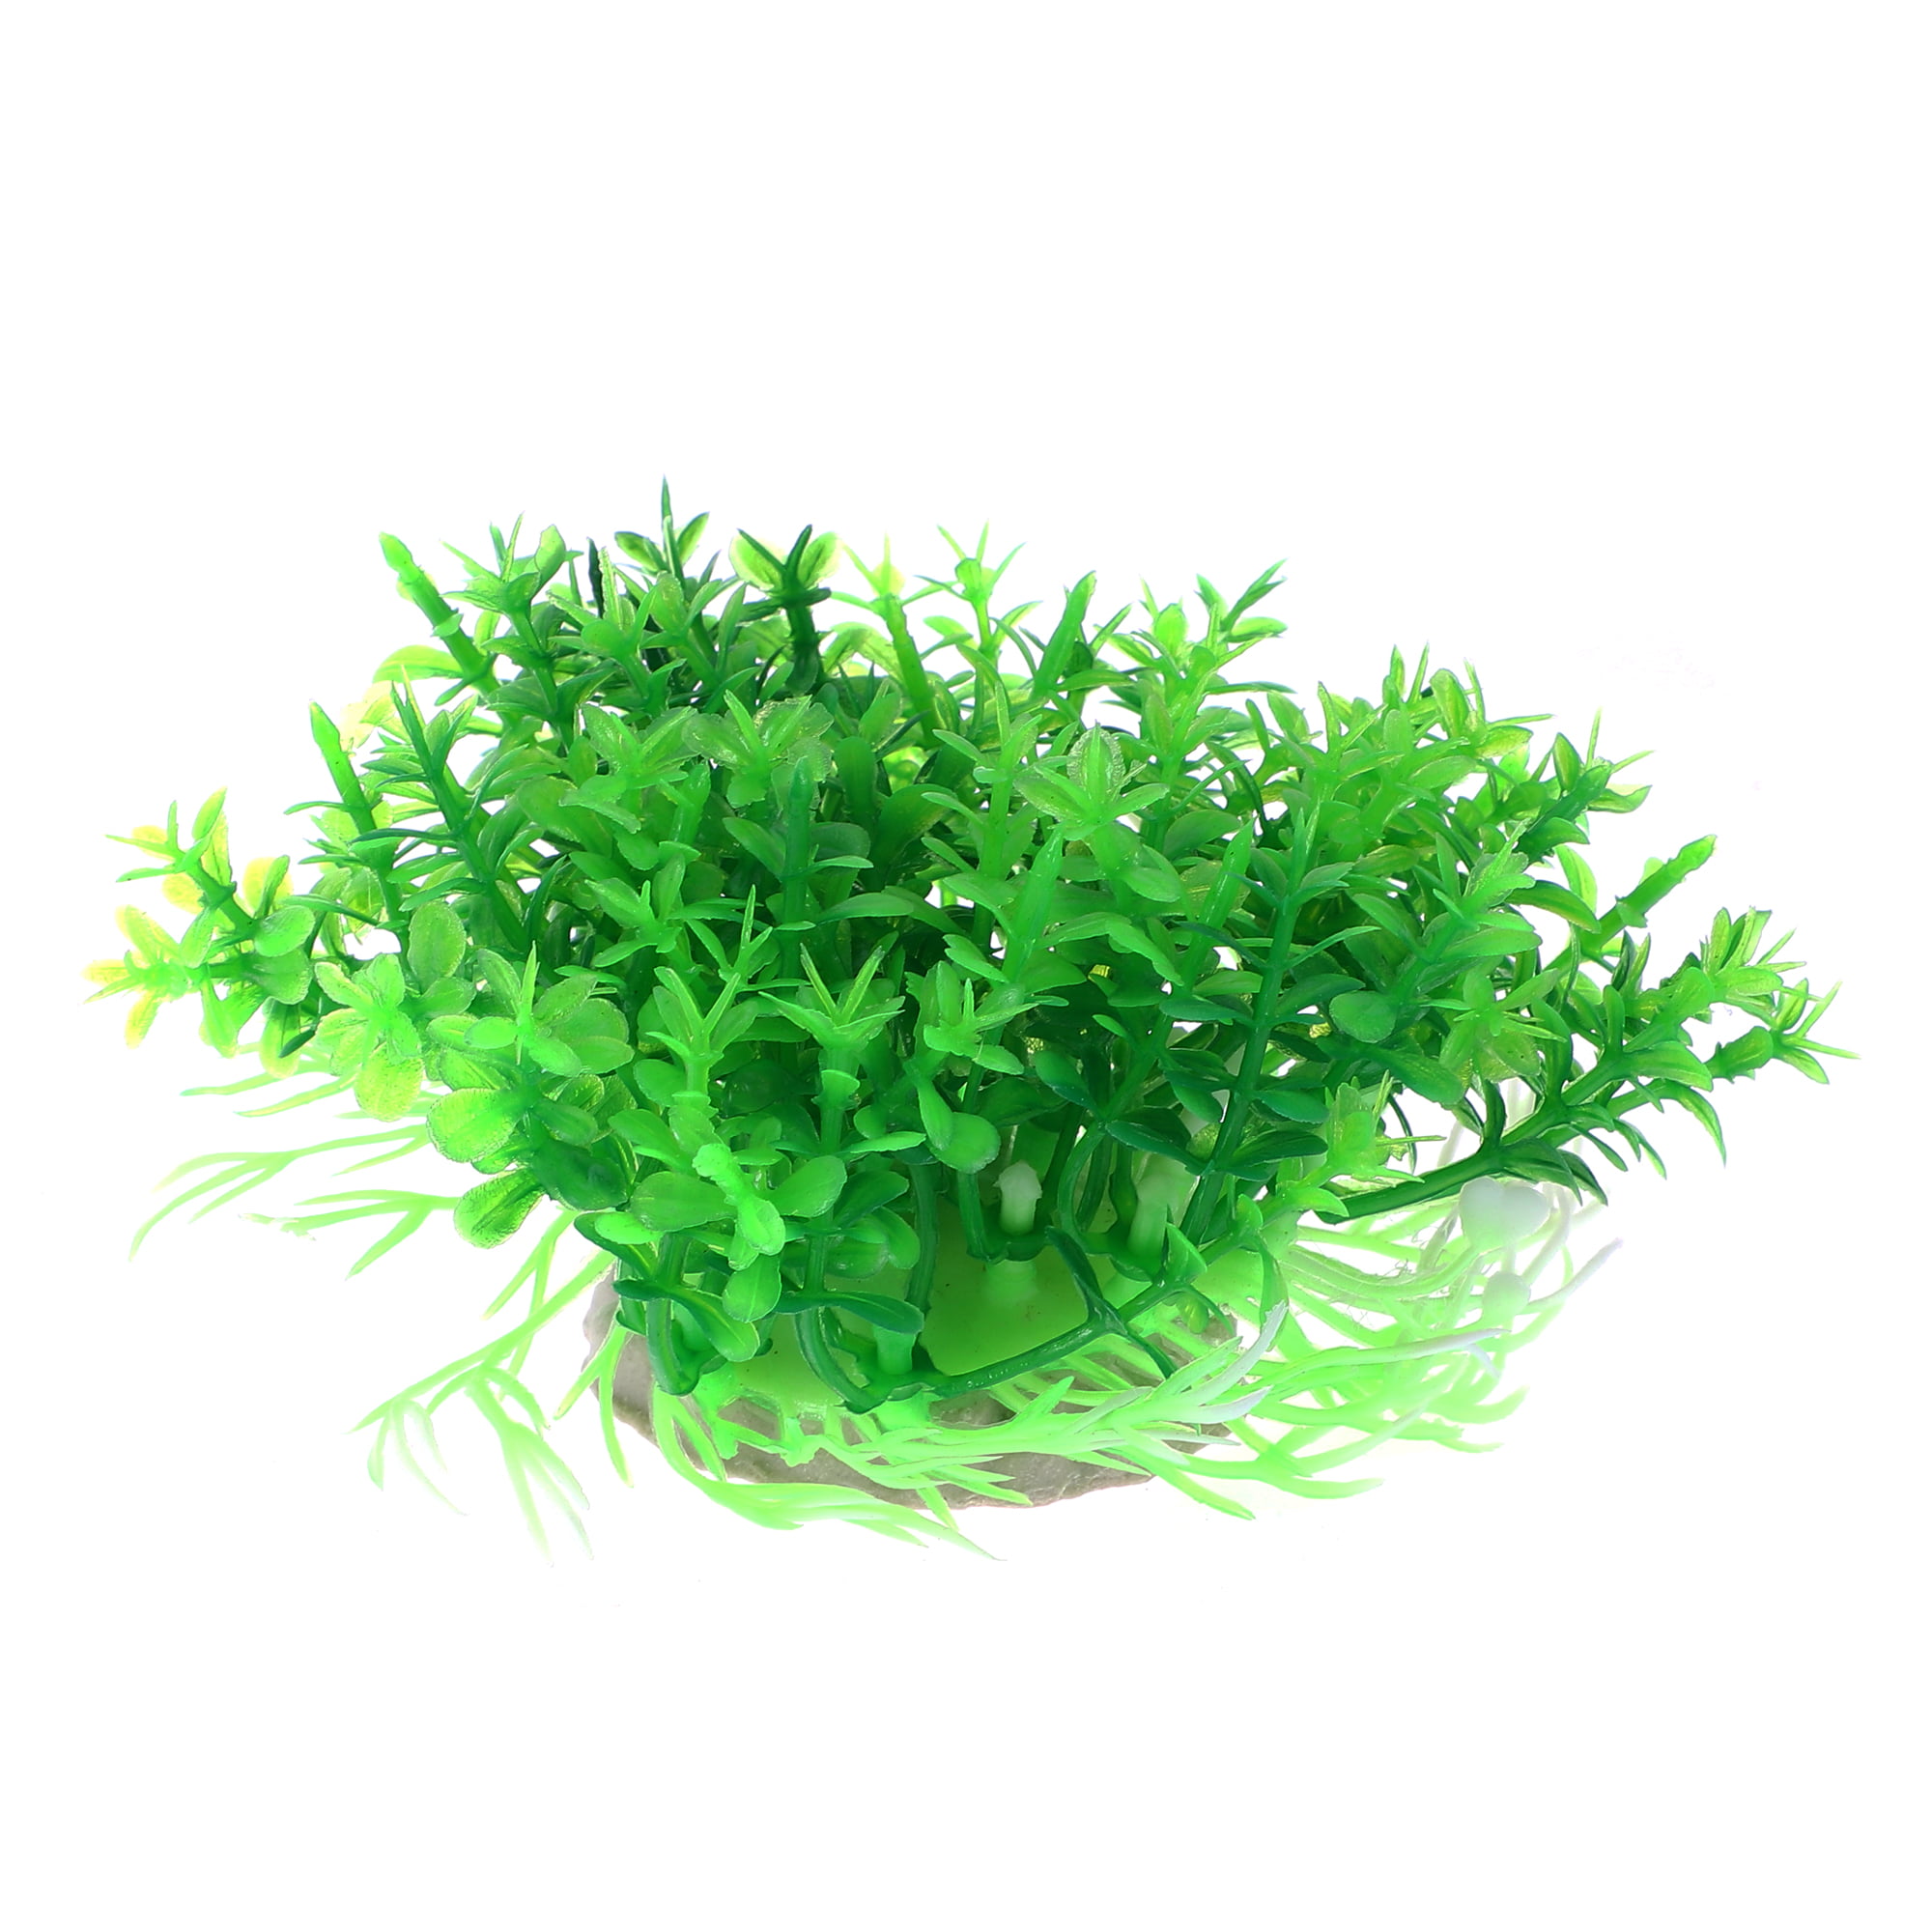 DA BOOM Fish Tank Aquarium Plants Decoration Ornament Artificial Plastic  Plant Green Grass Lawn Mat 